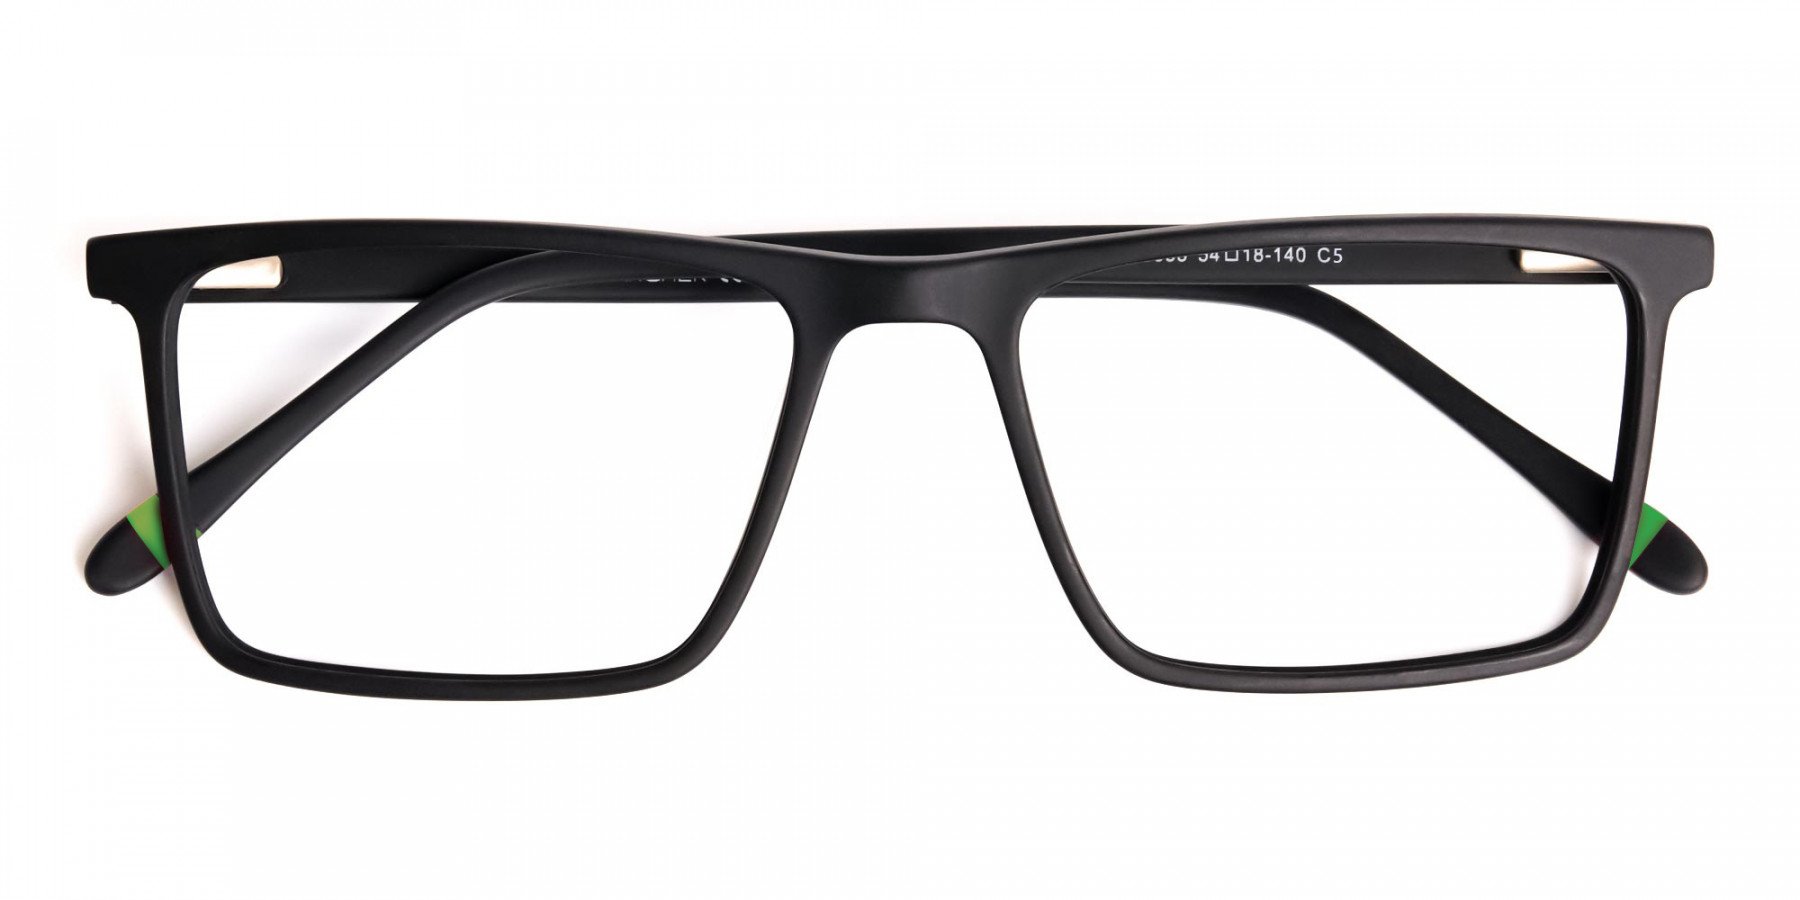 matte-grey-full-rim-rectangular-glasses-frames-1